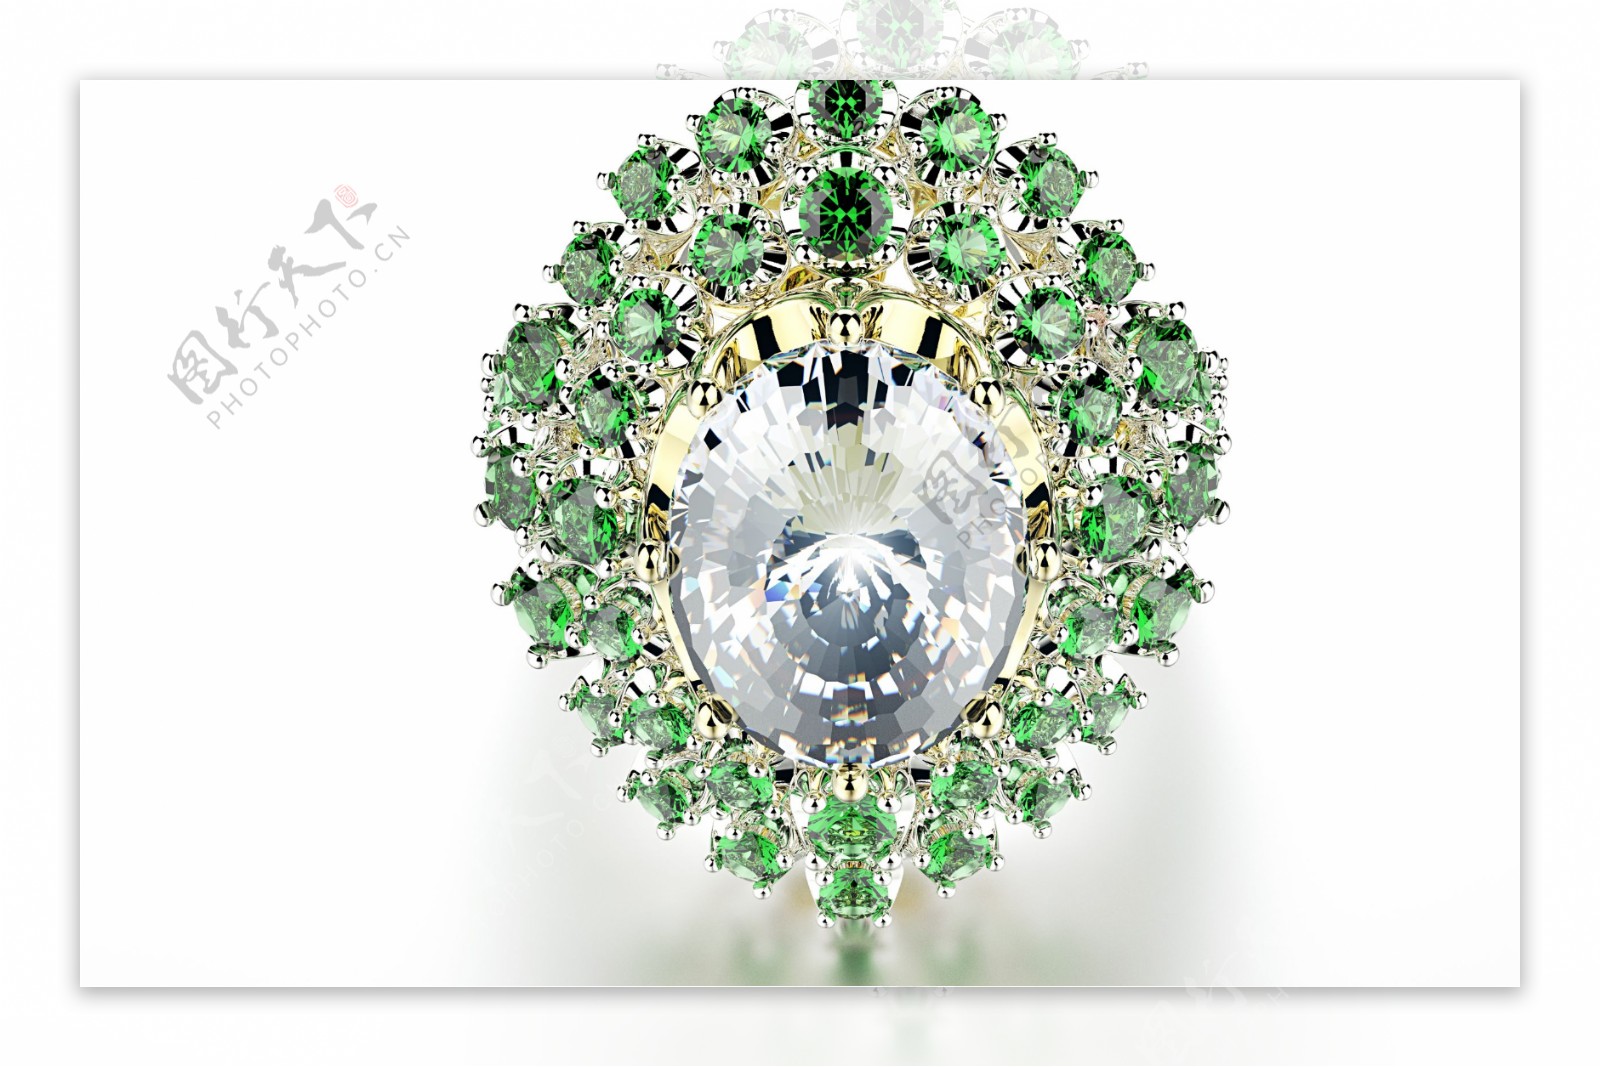 翠绿色钻石戒指图片